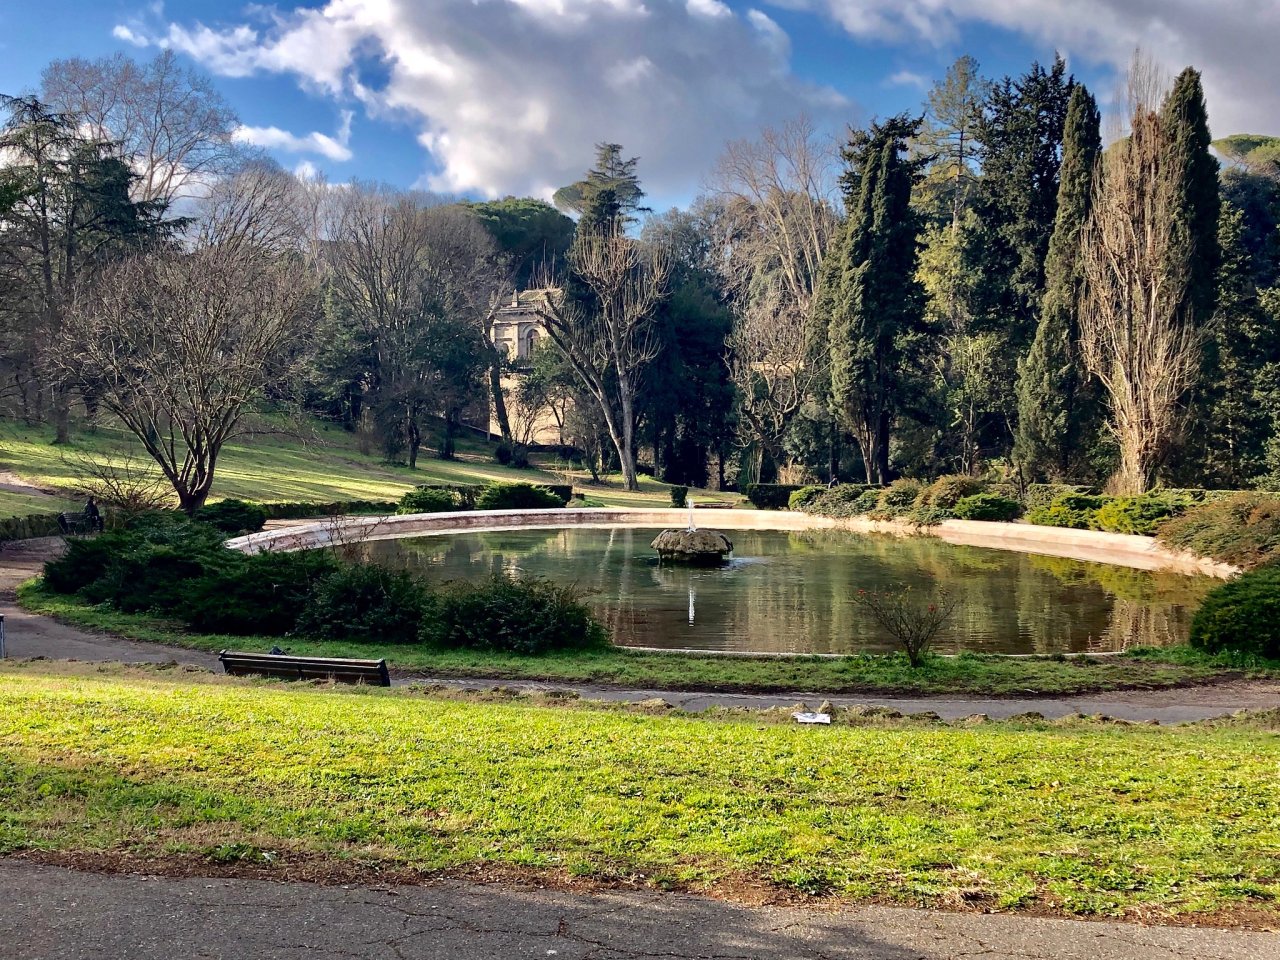 Villa Borghese Gardens, Rome, Italy